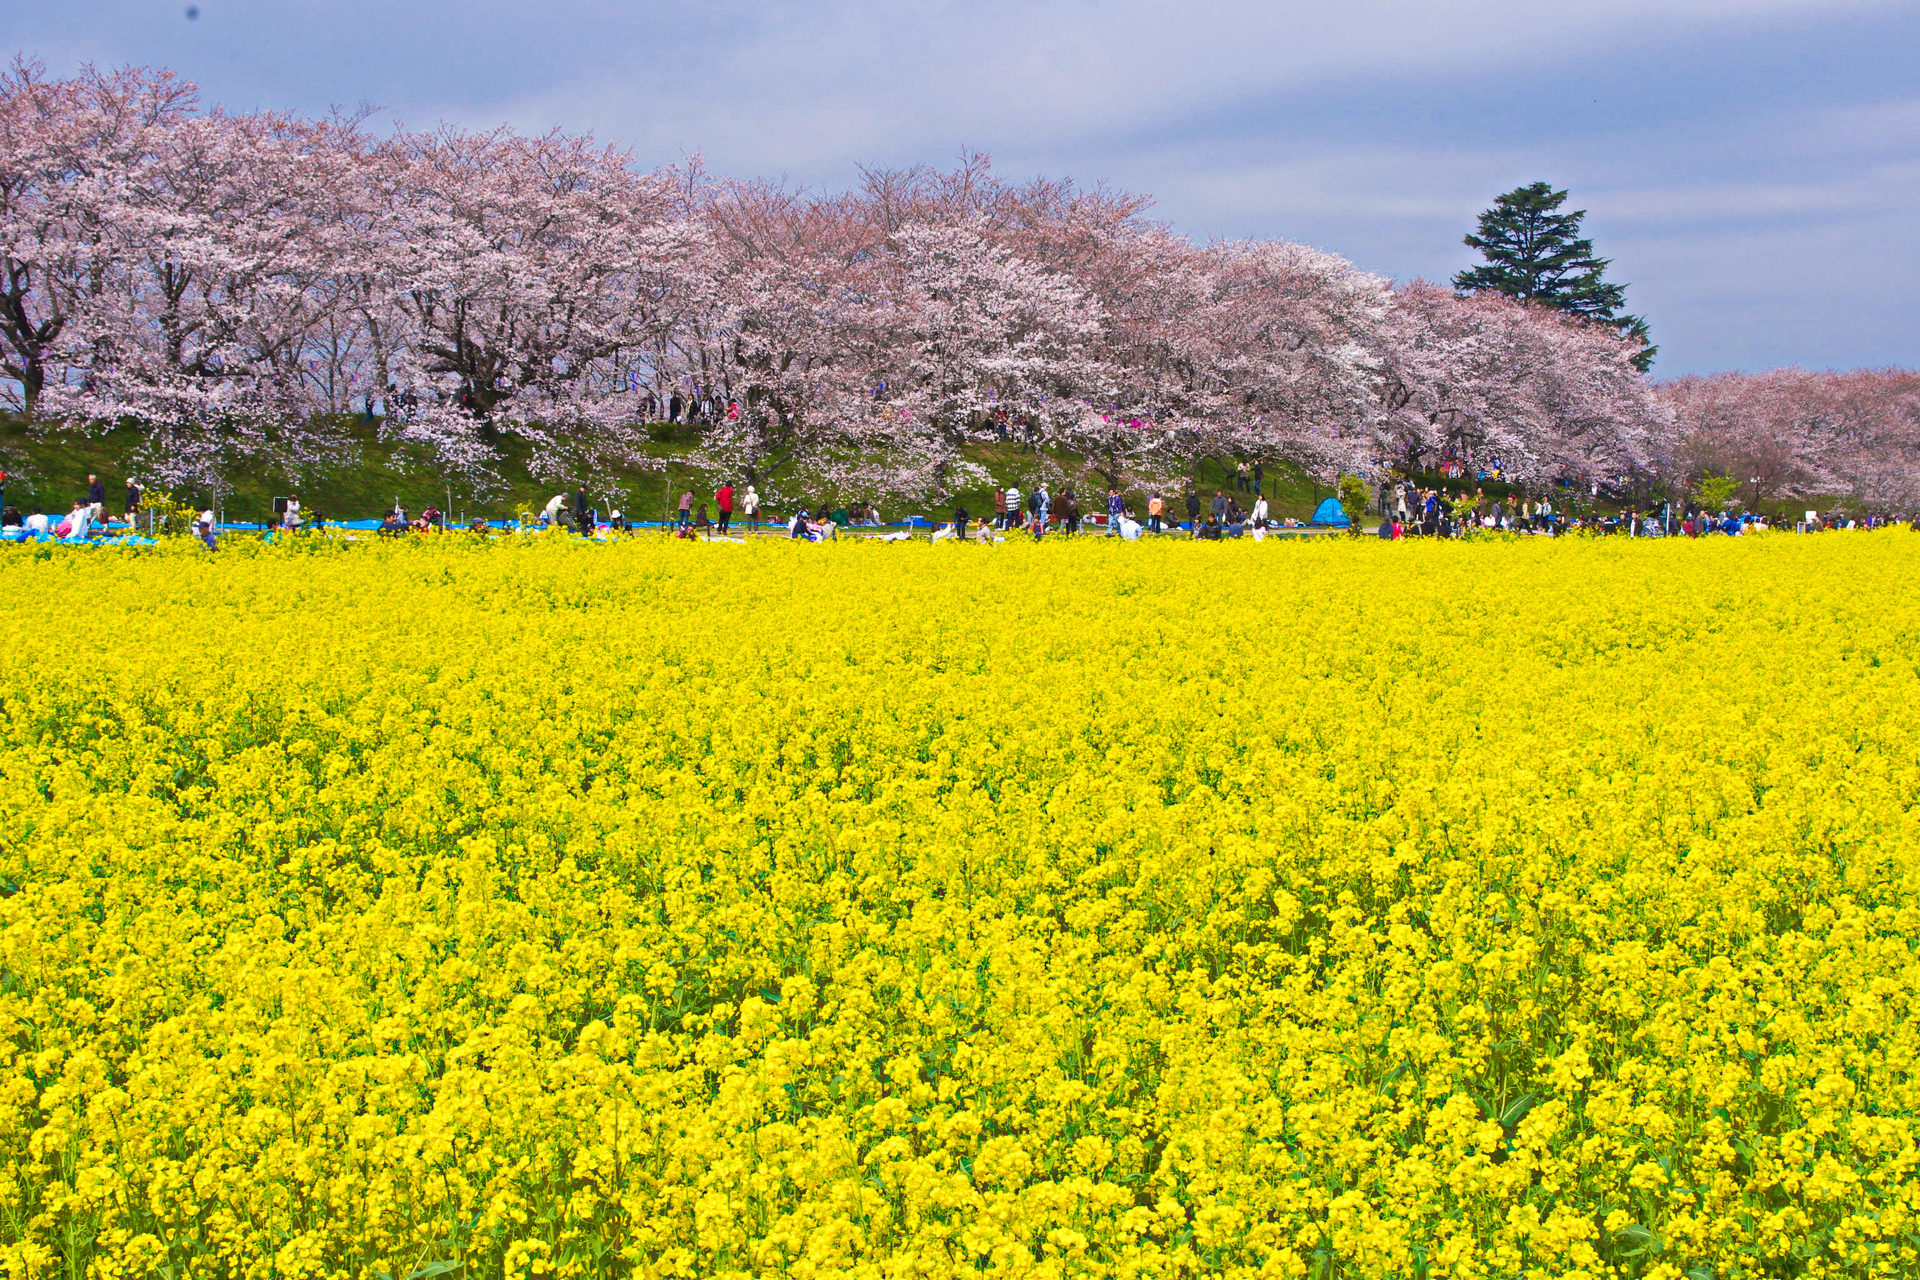 日本の風景 春の彩り 菜の花畑と桜並木 壁紙19x1280 壁紙館